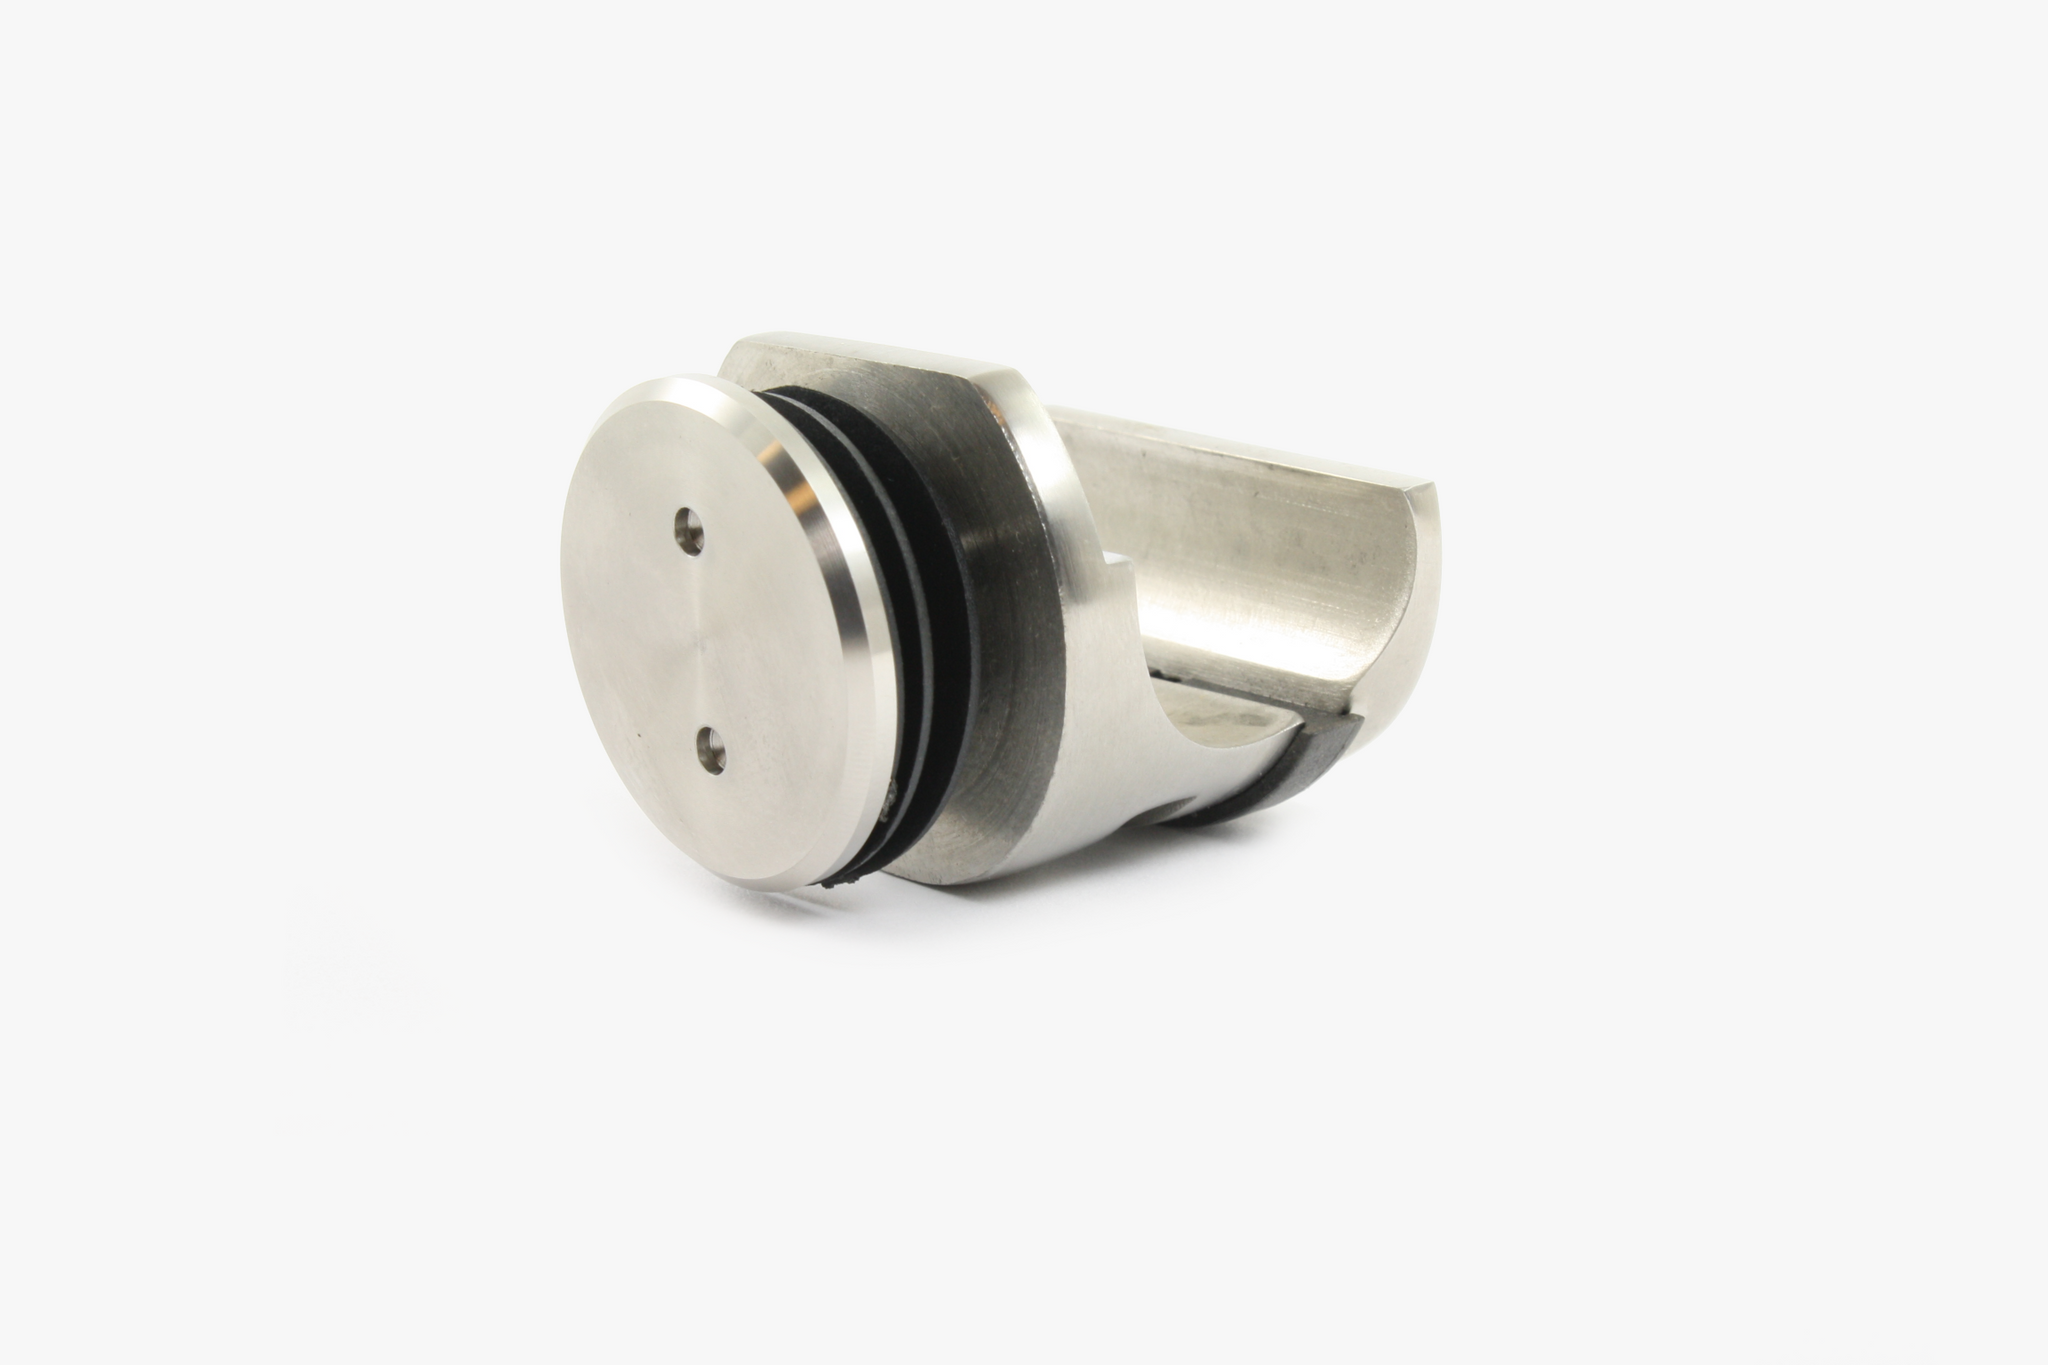 Lennox Slider Kit - glass mount adaptor